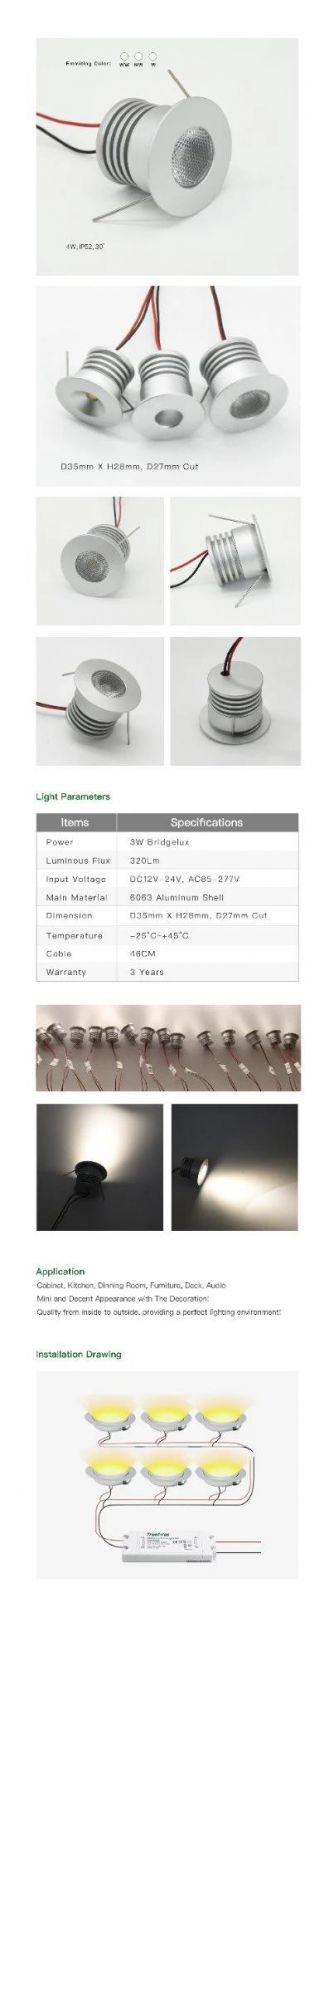 3000K Warm White DC12V-24V 4W Mini LED Ceiling Downlight for Showcase Cabinet Bulb Lamp